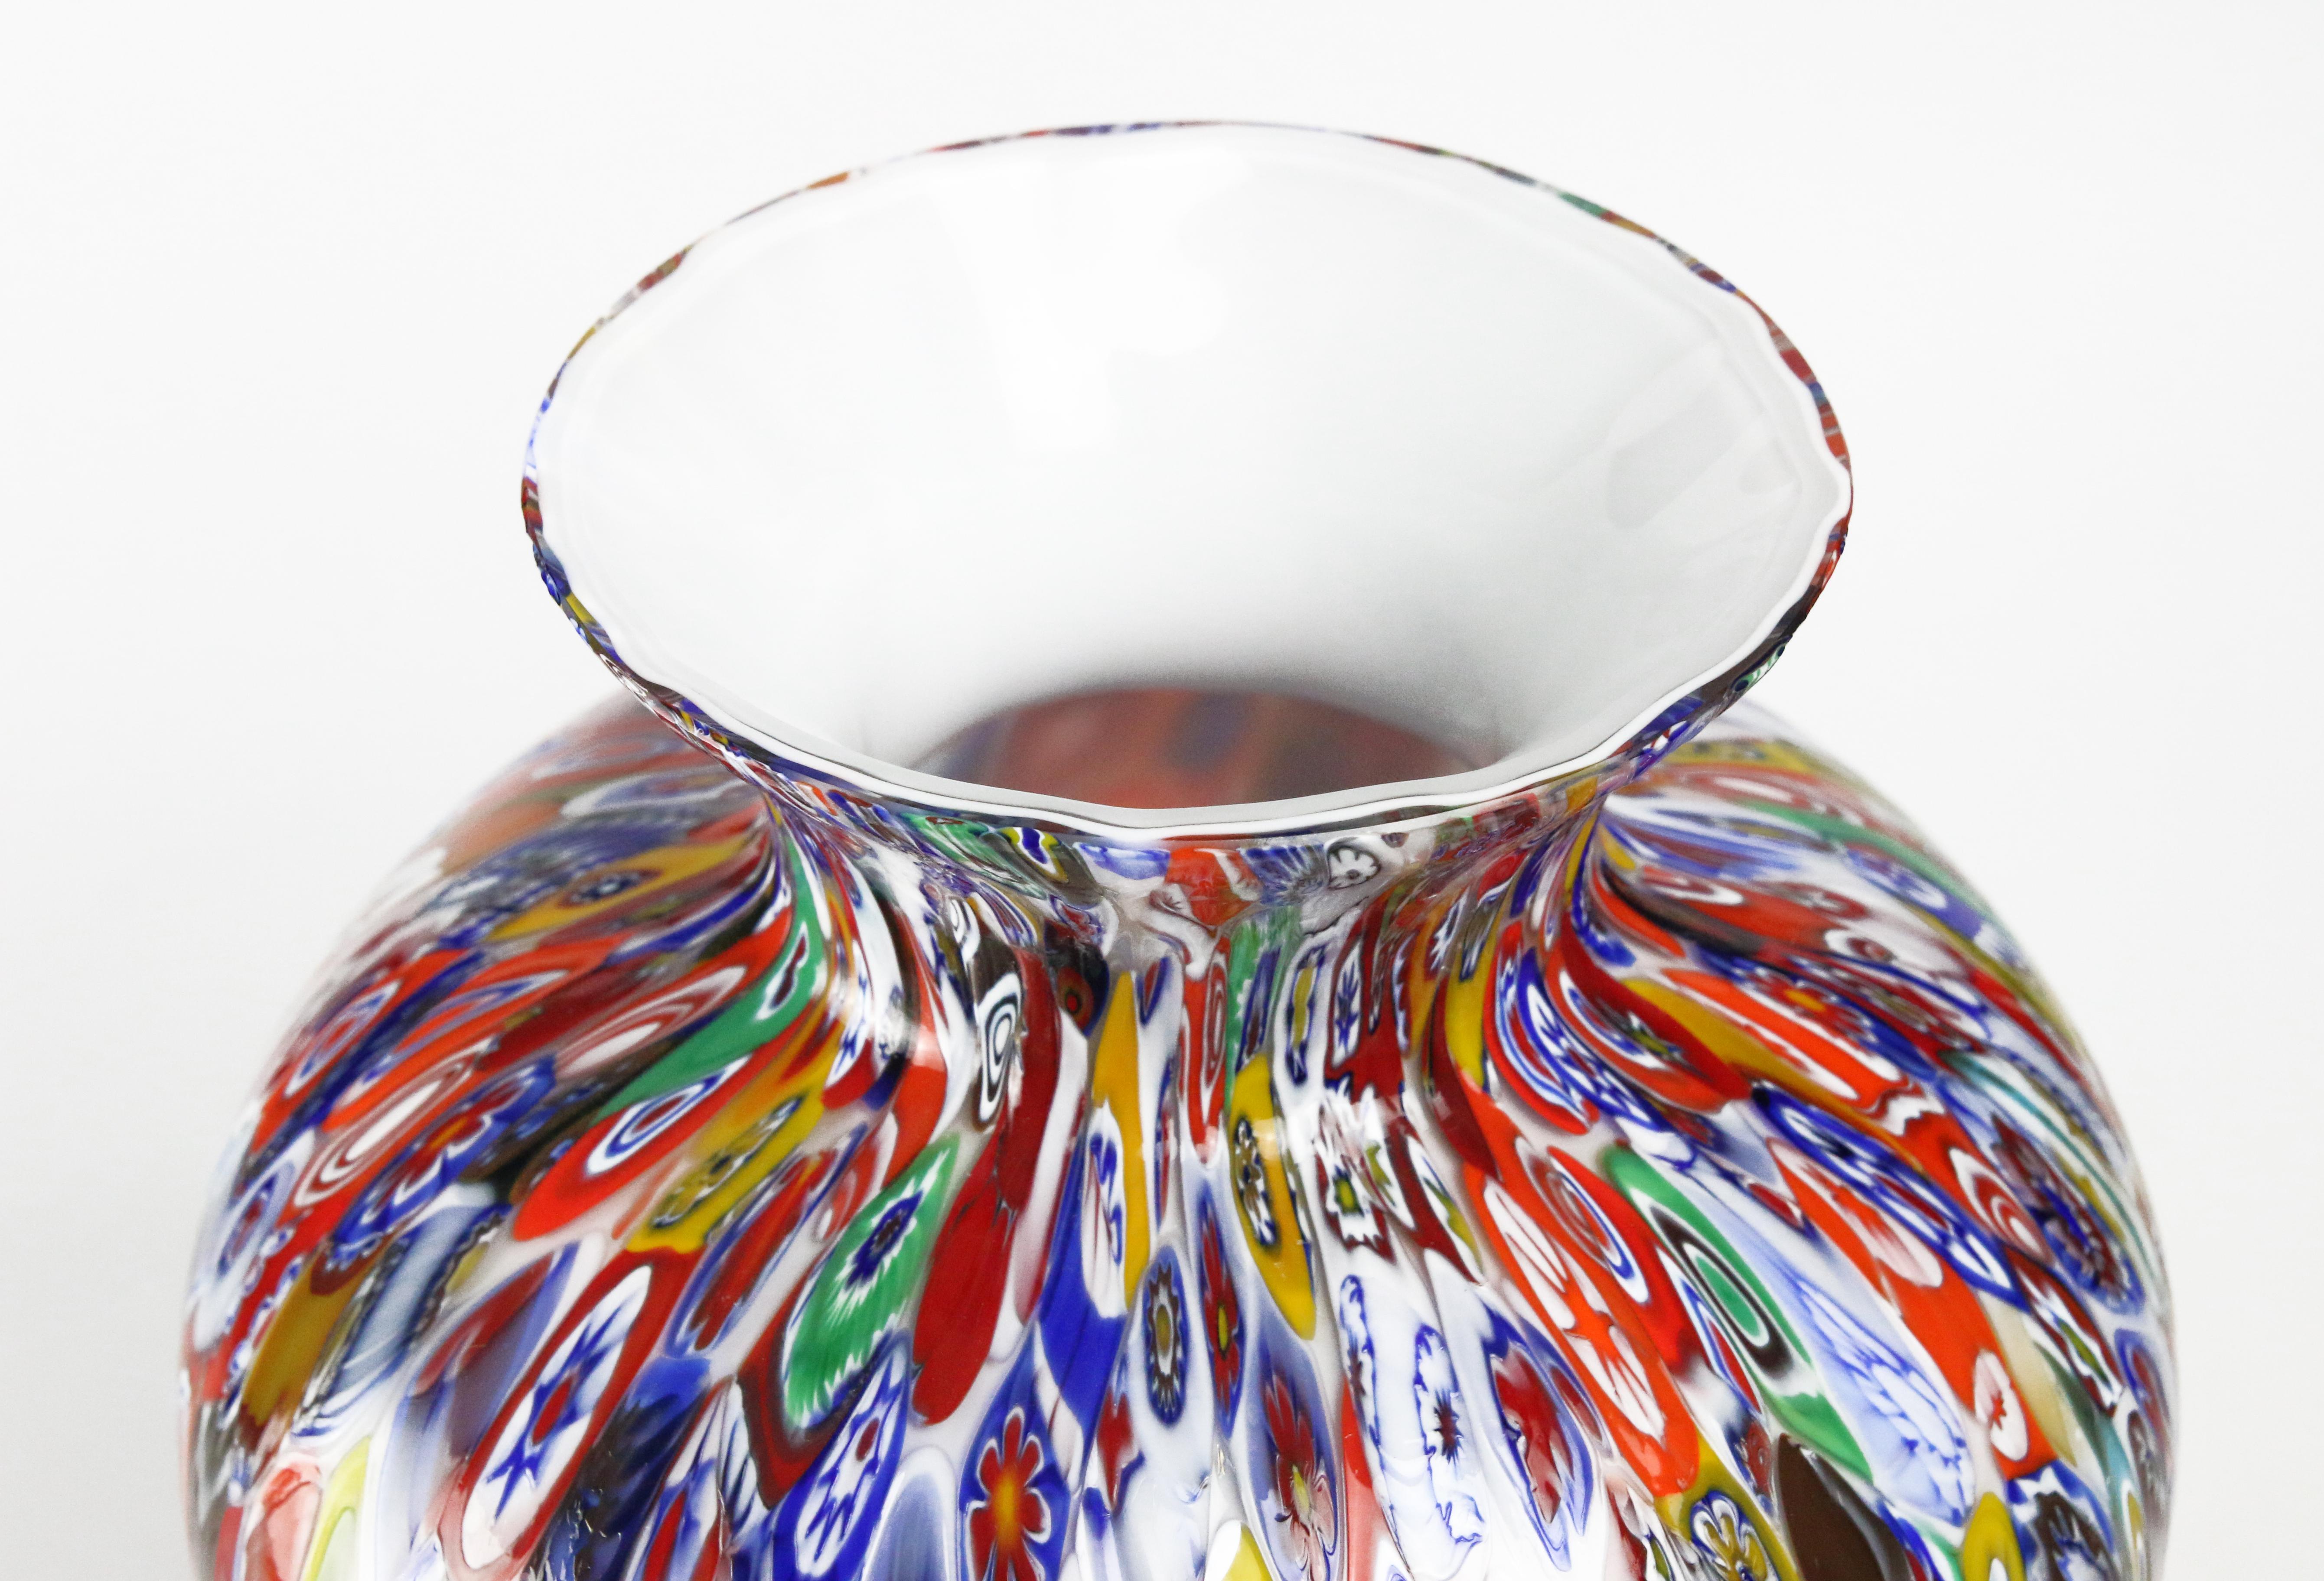 Art Glass 1295 Murano Hand Blown Glass Millefiori Murrine Vase Limited Edition H 14, 5 in 